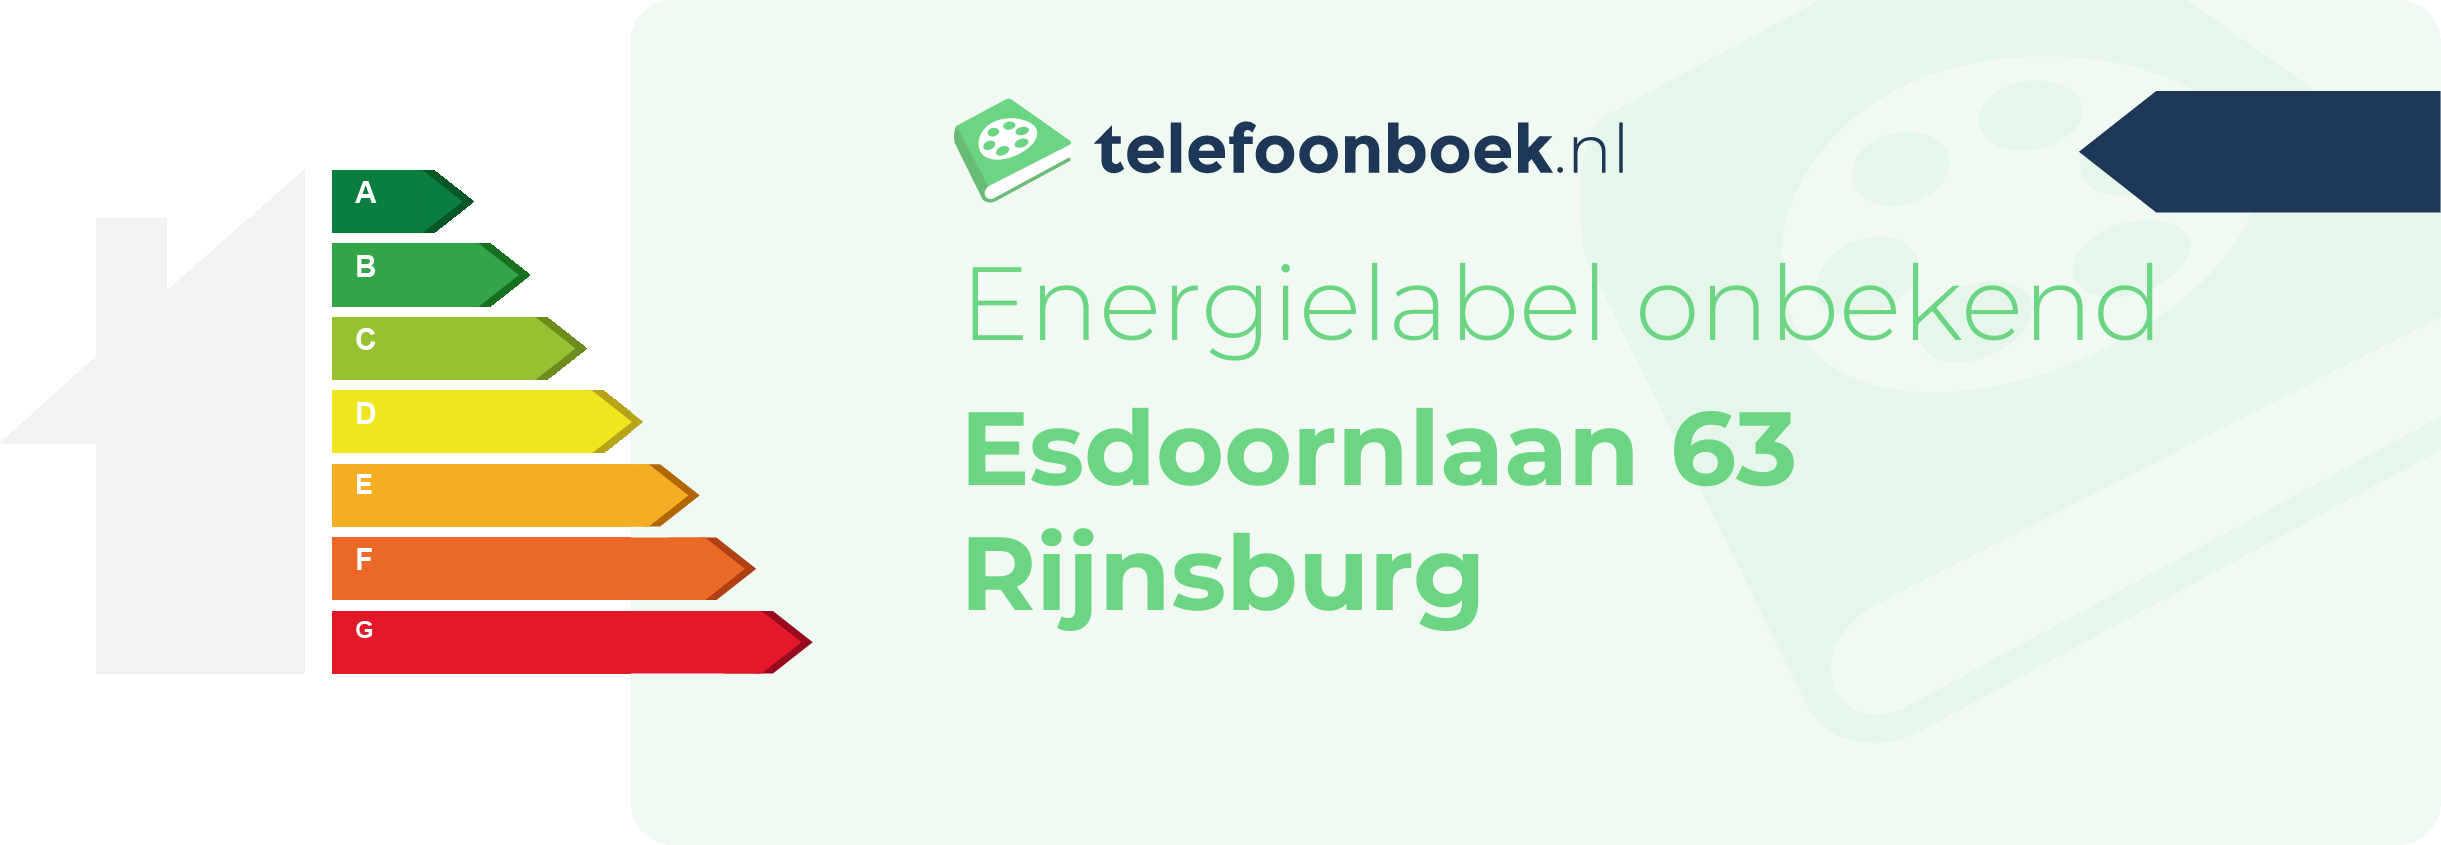 Energielabel Esdoornlaan 63 Rijnsburg